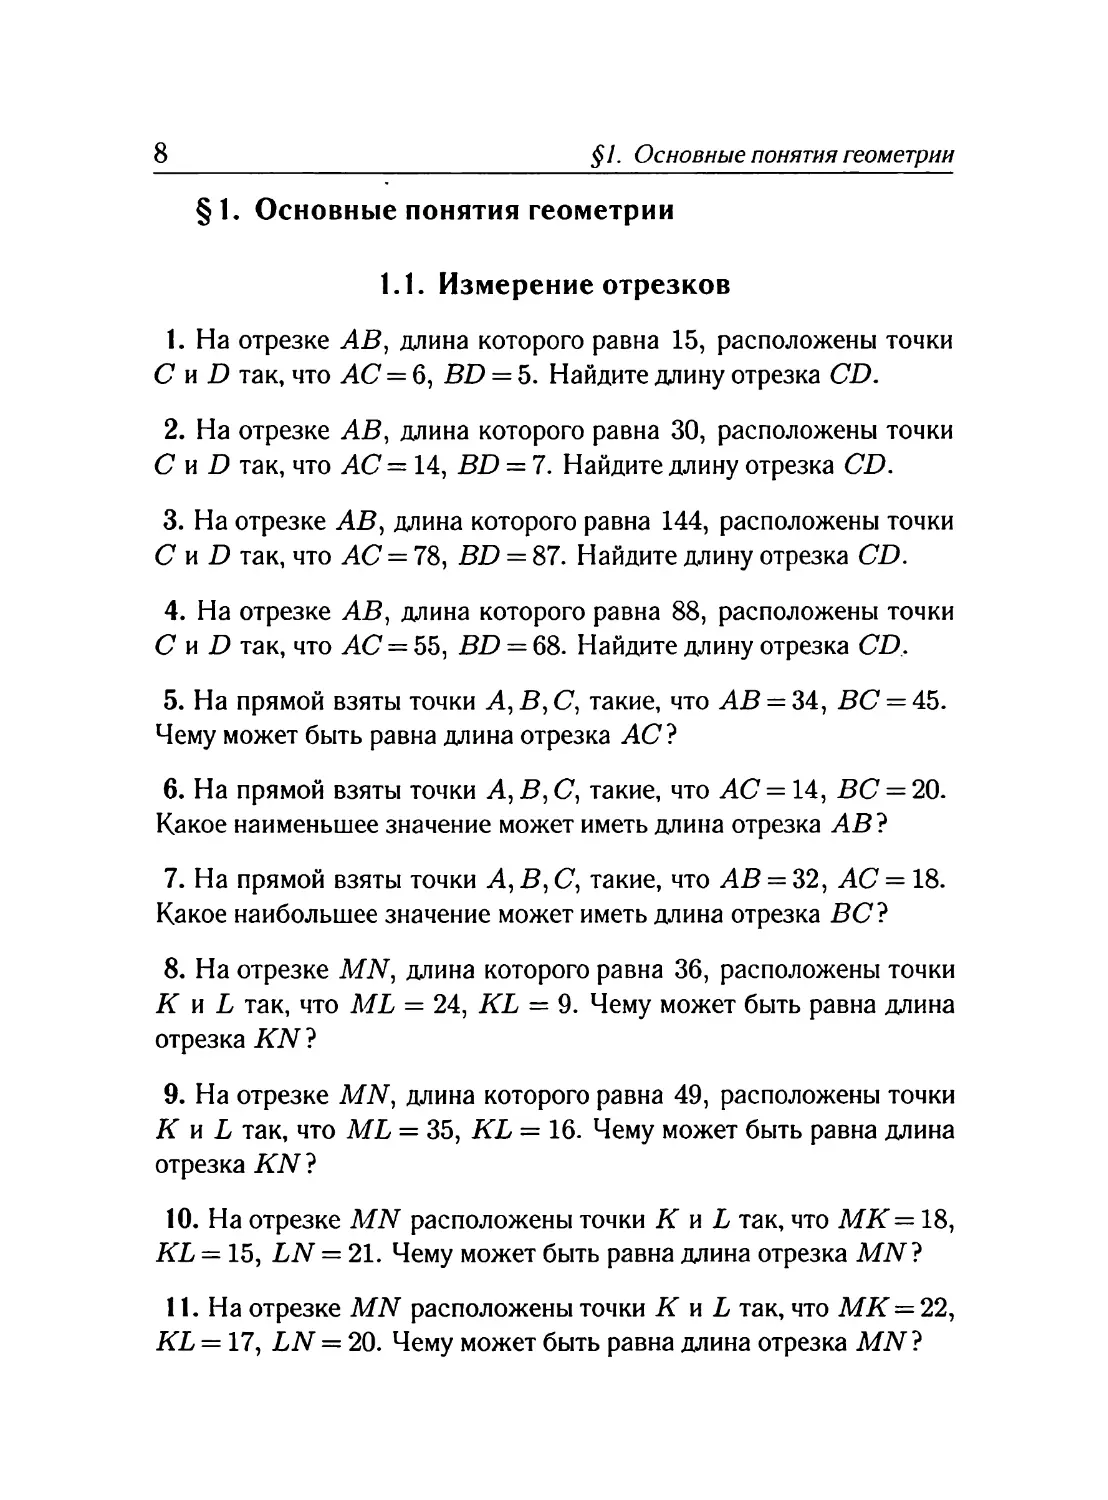 Задачник и контрольные работы
§ 1. Основные понятия геометрии
Измерение отрезков